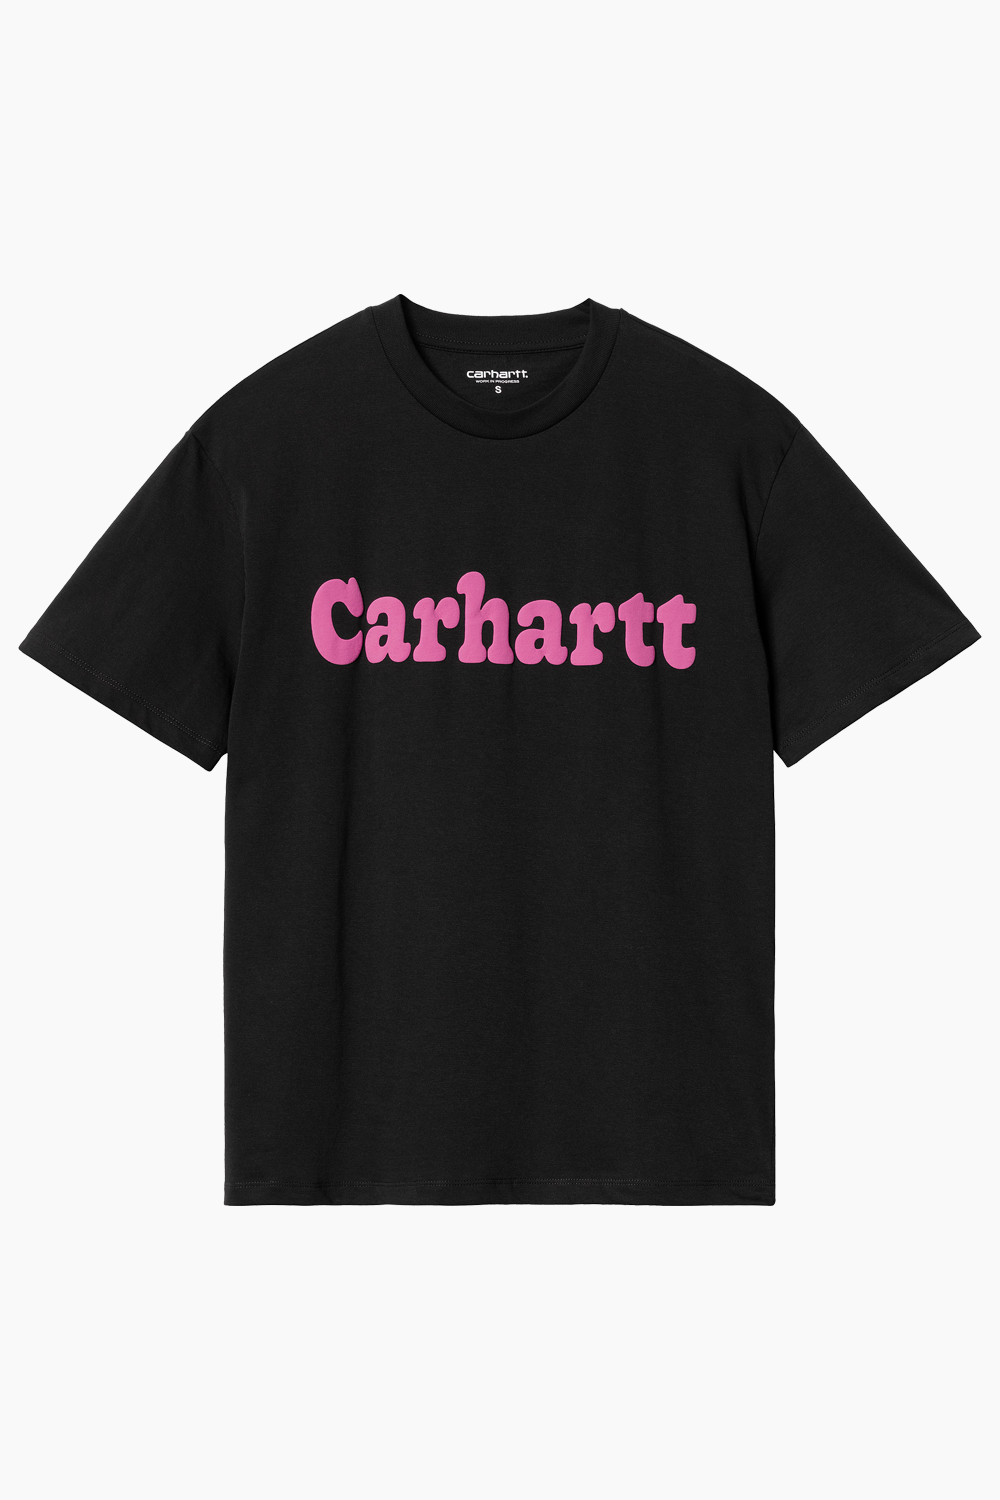 W' S/S Bubbles T-shirt - Black/Pink - Carhartt WIP